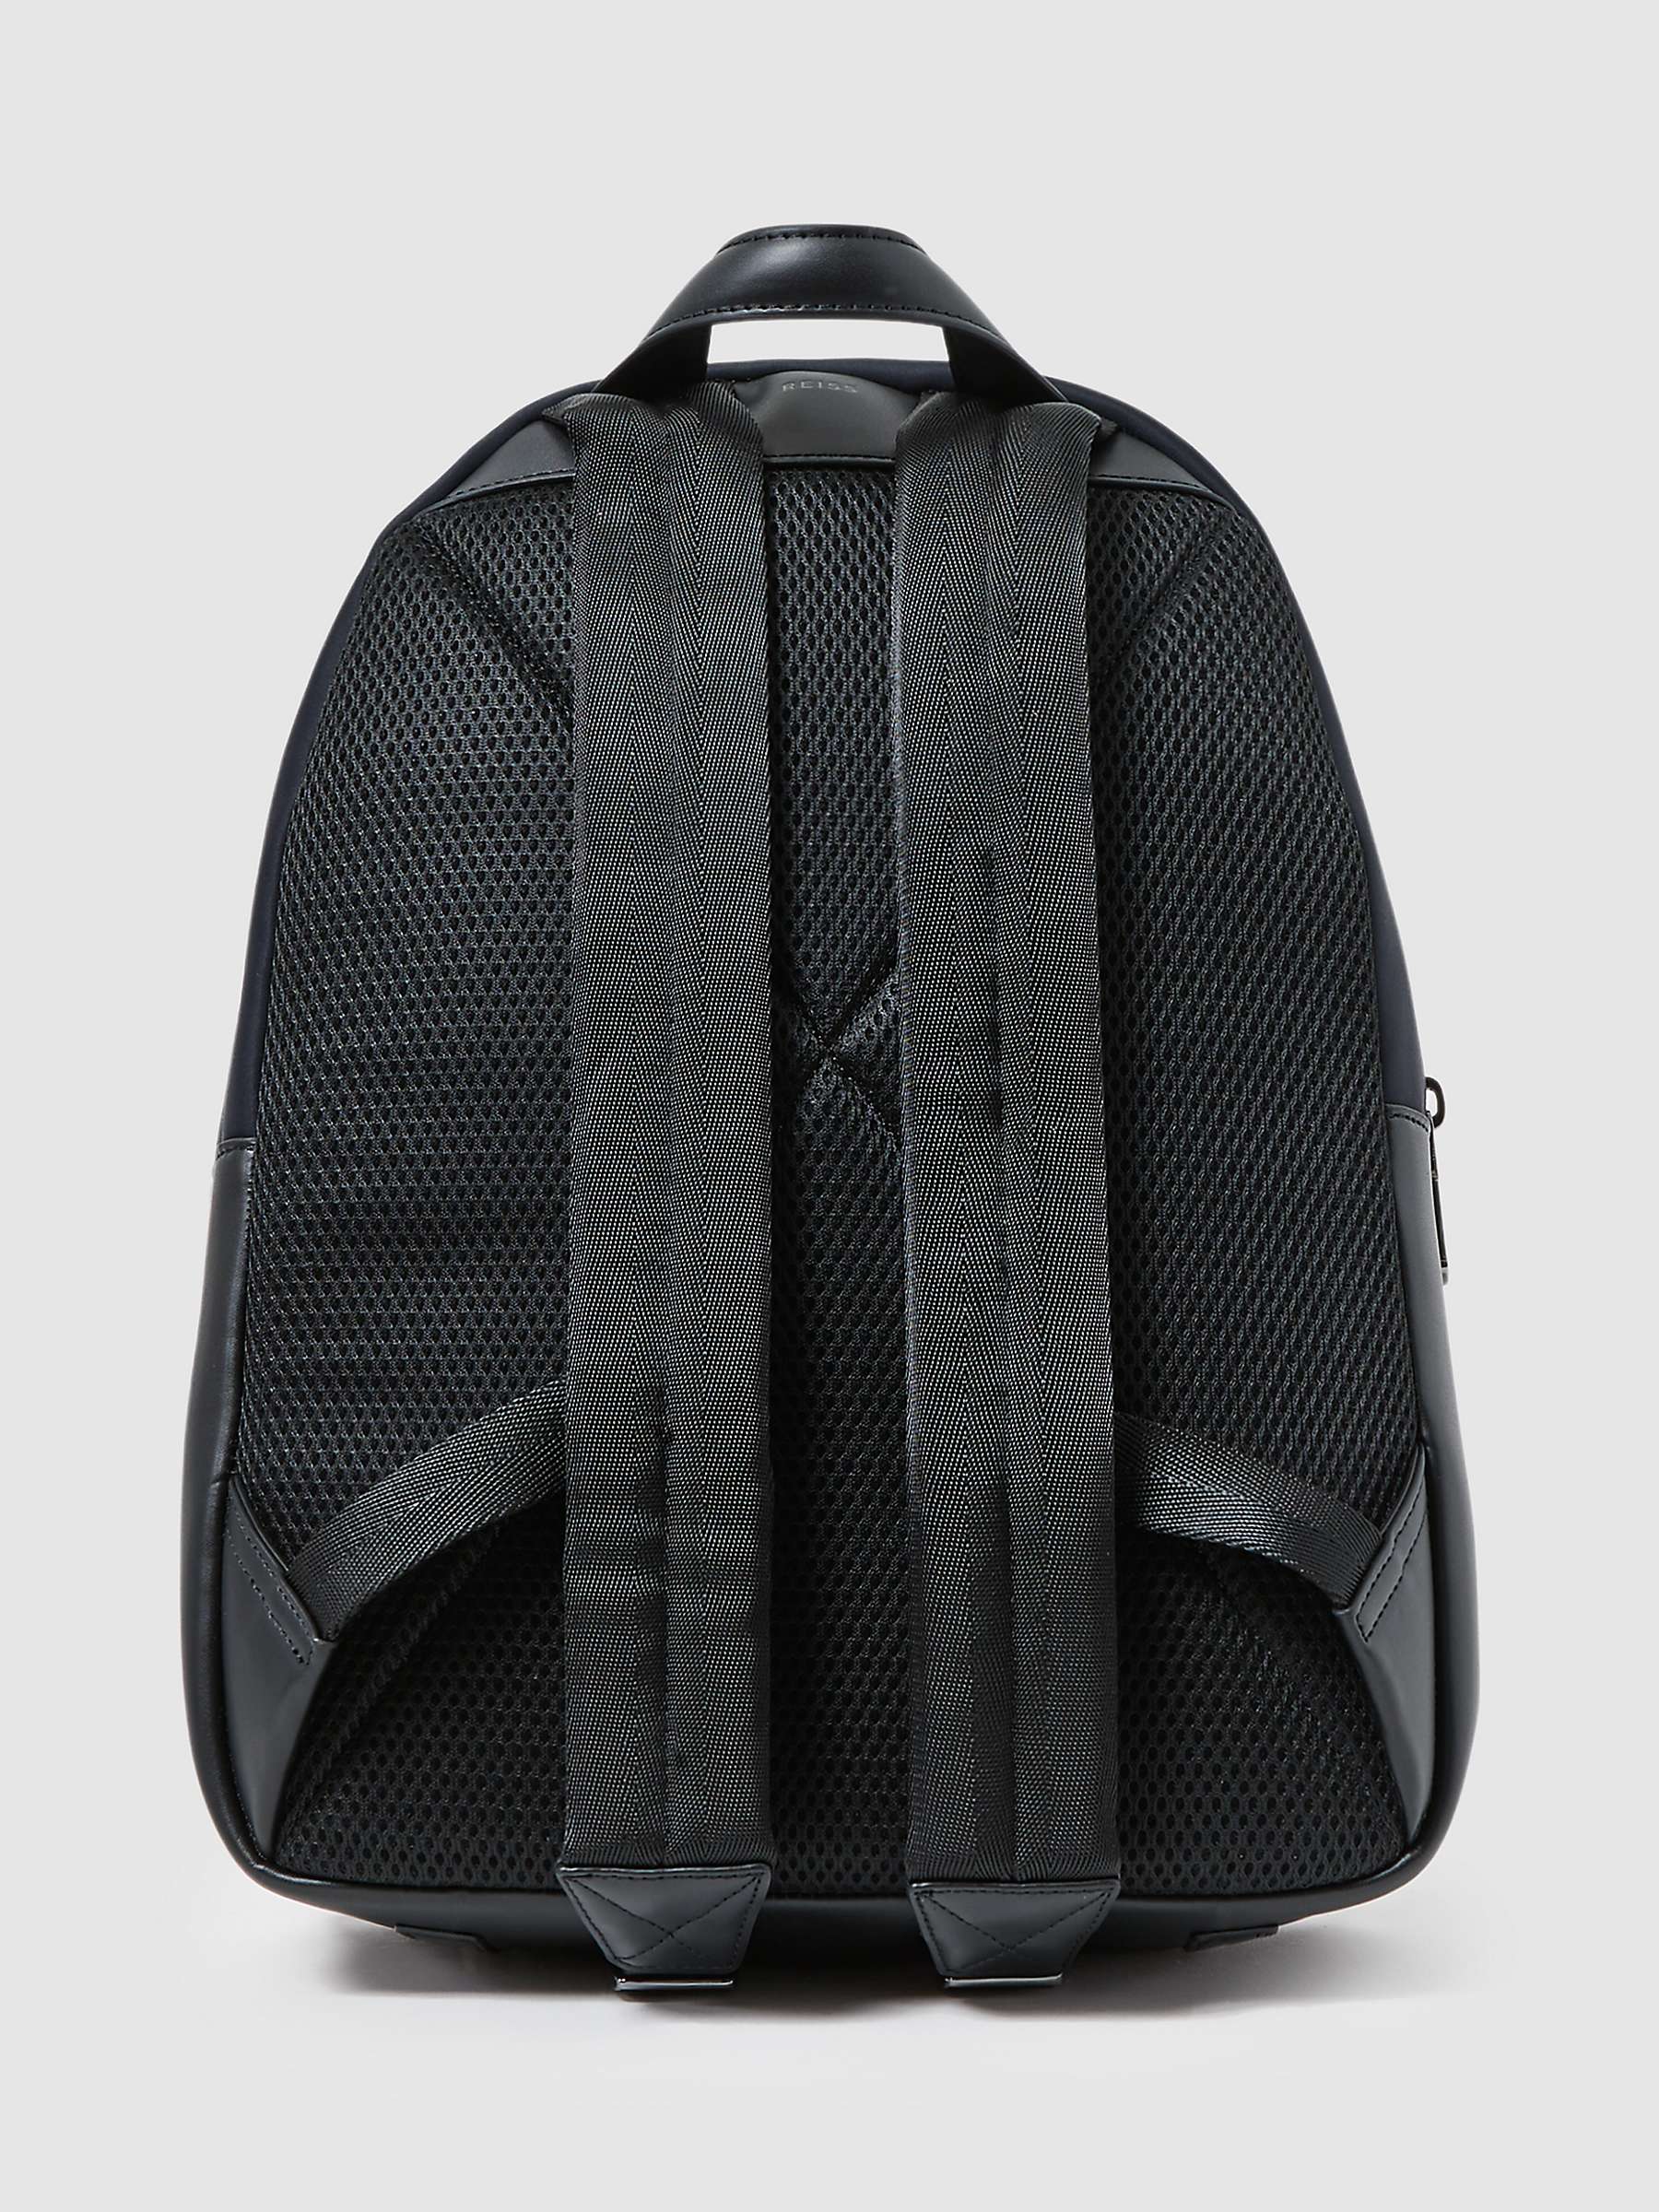 Buy Reiss Drew Neoprene Backpack Online at johnlewis.com